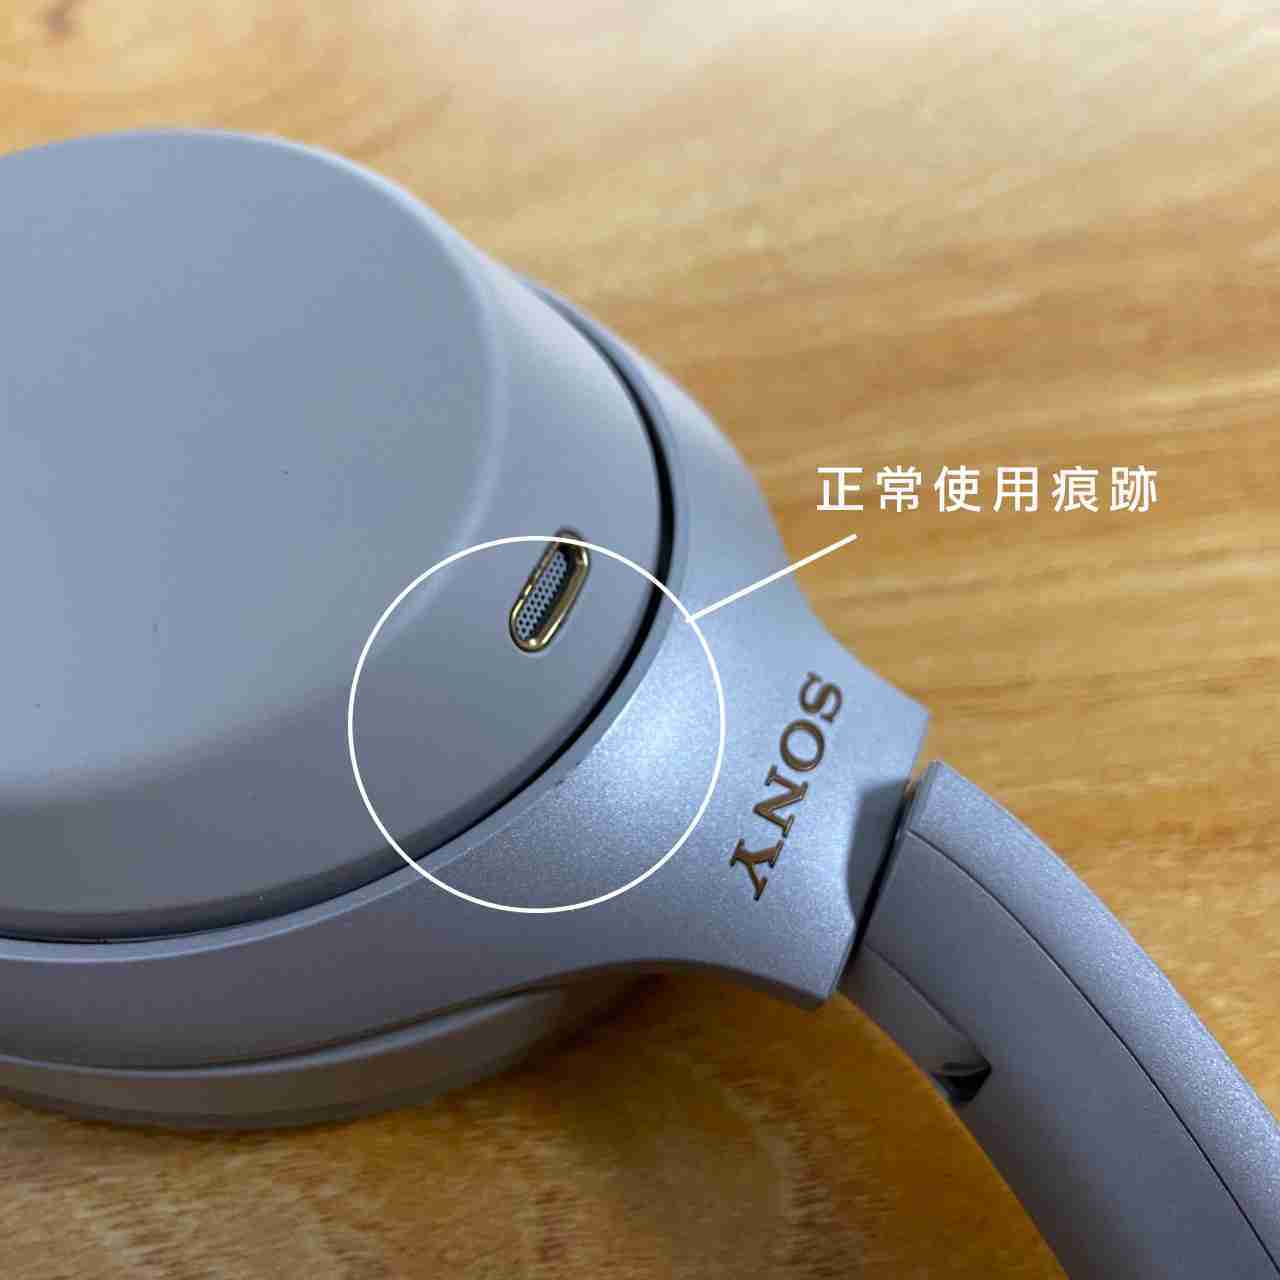 【福利機B組】SONY WH-1000XM3 銀色 藍牙 降噪 耳罩式 耳機 | 金曲音響